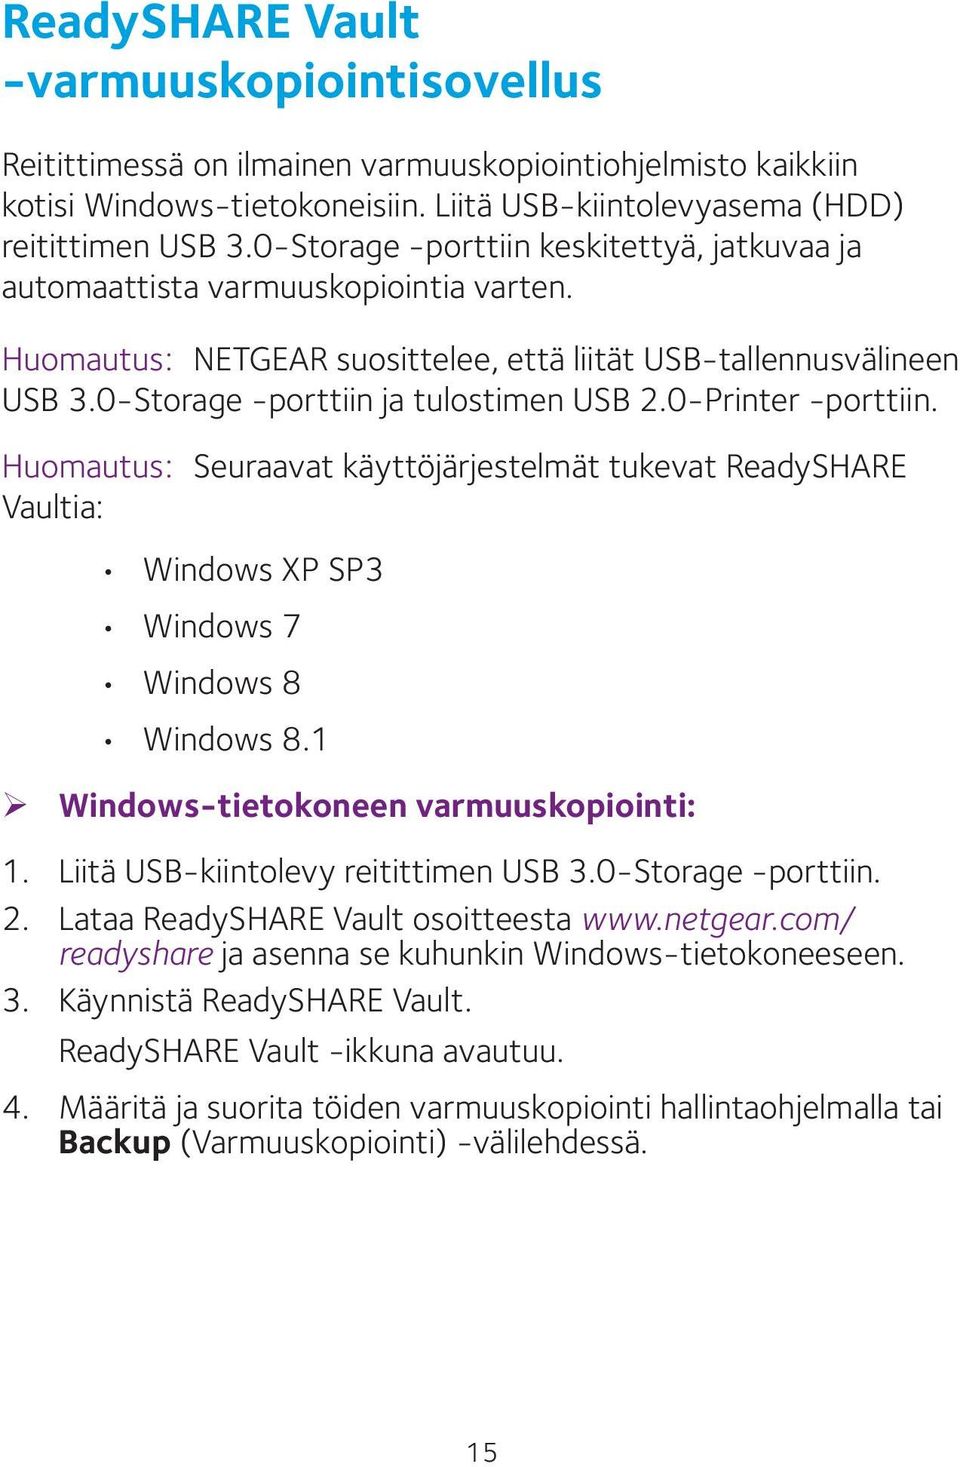 0-Printer -porttiin. Huomautus: Seuraavat käyttöjärjestelmät tukevat ReadySHARE Vaultia: Windows XP SP3 Windows 7 Windows 8 Windows 8.1 ¾ Windows-tietokoneen varmuuskopiointi: 1.